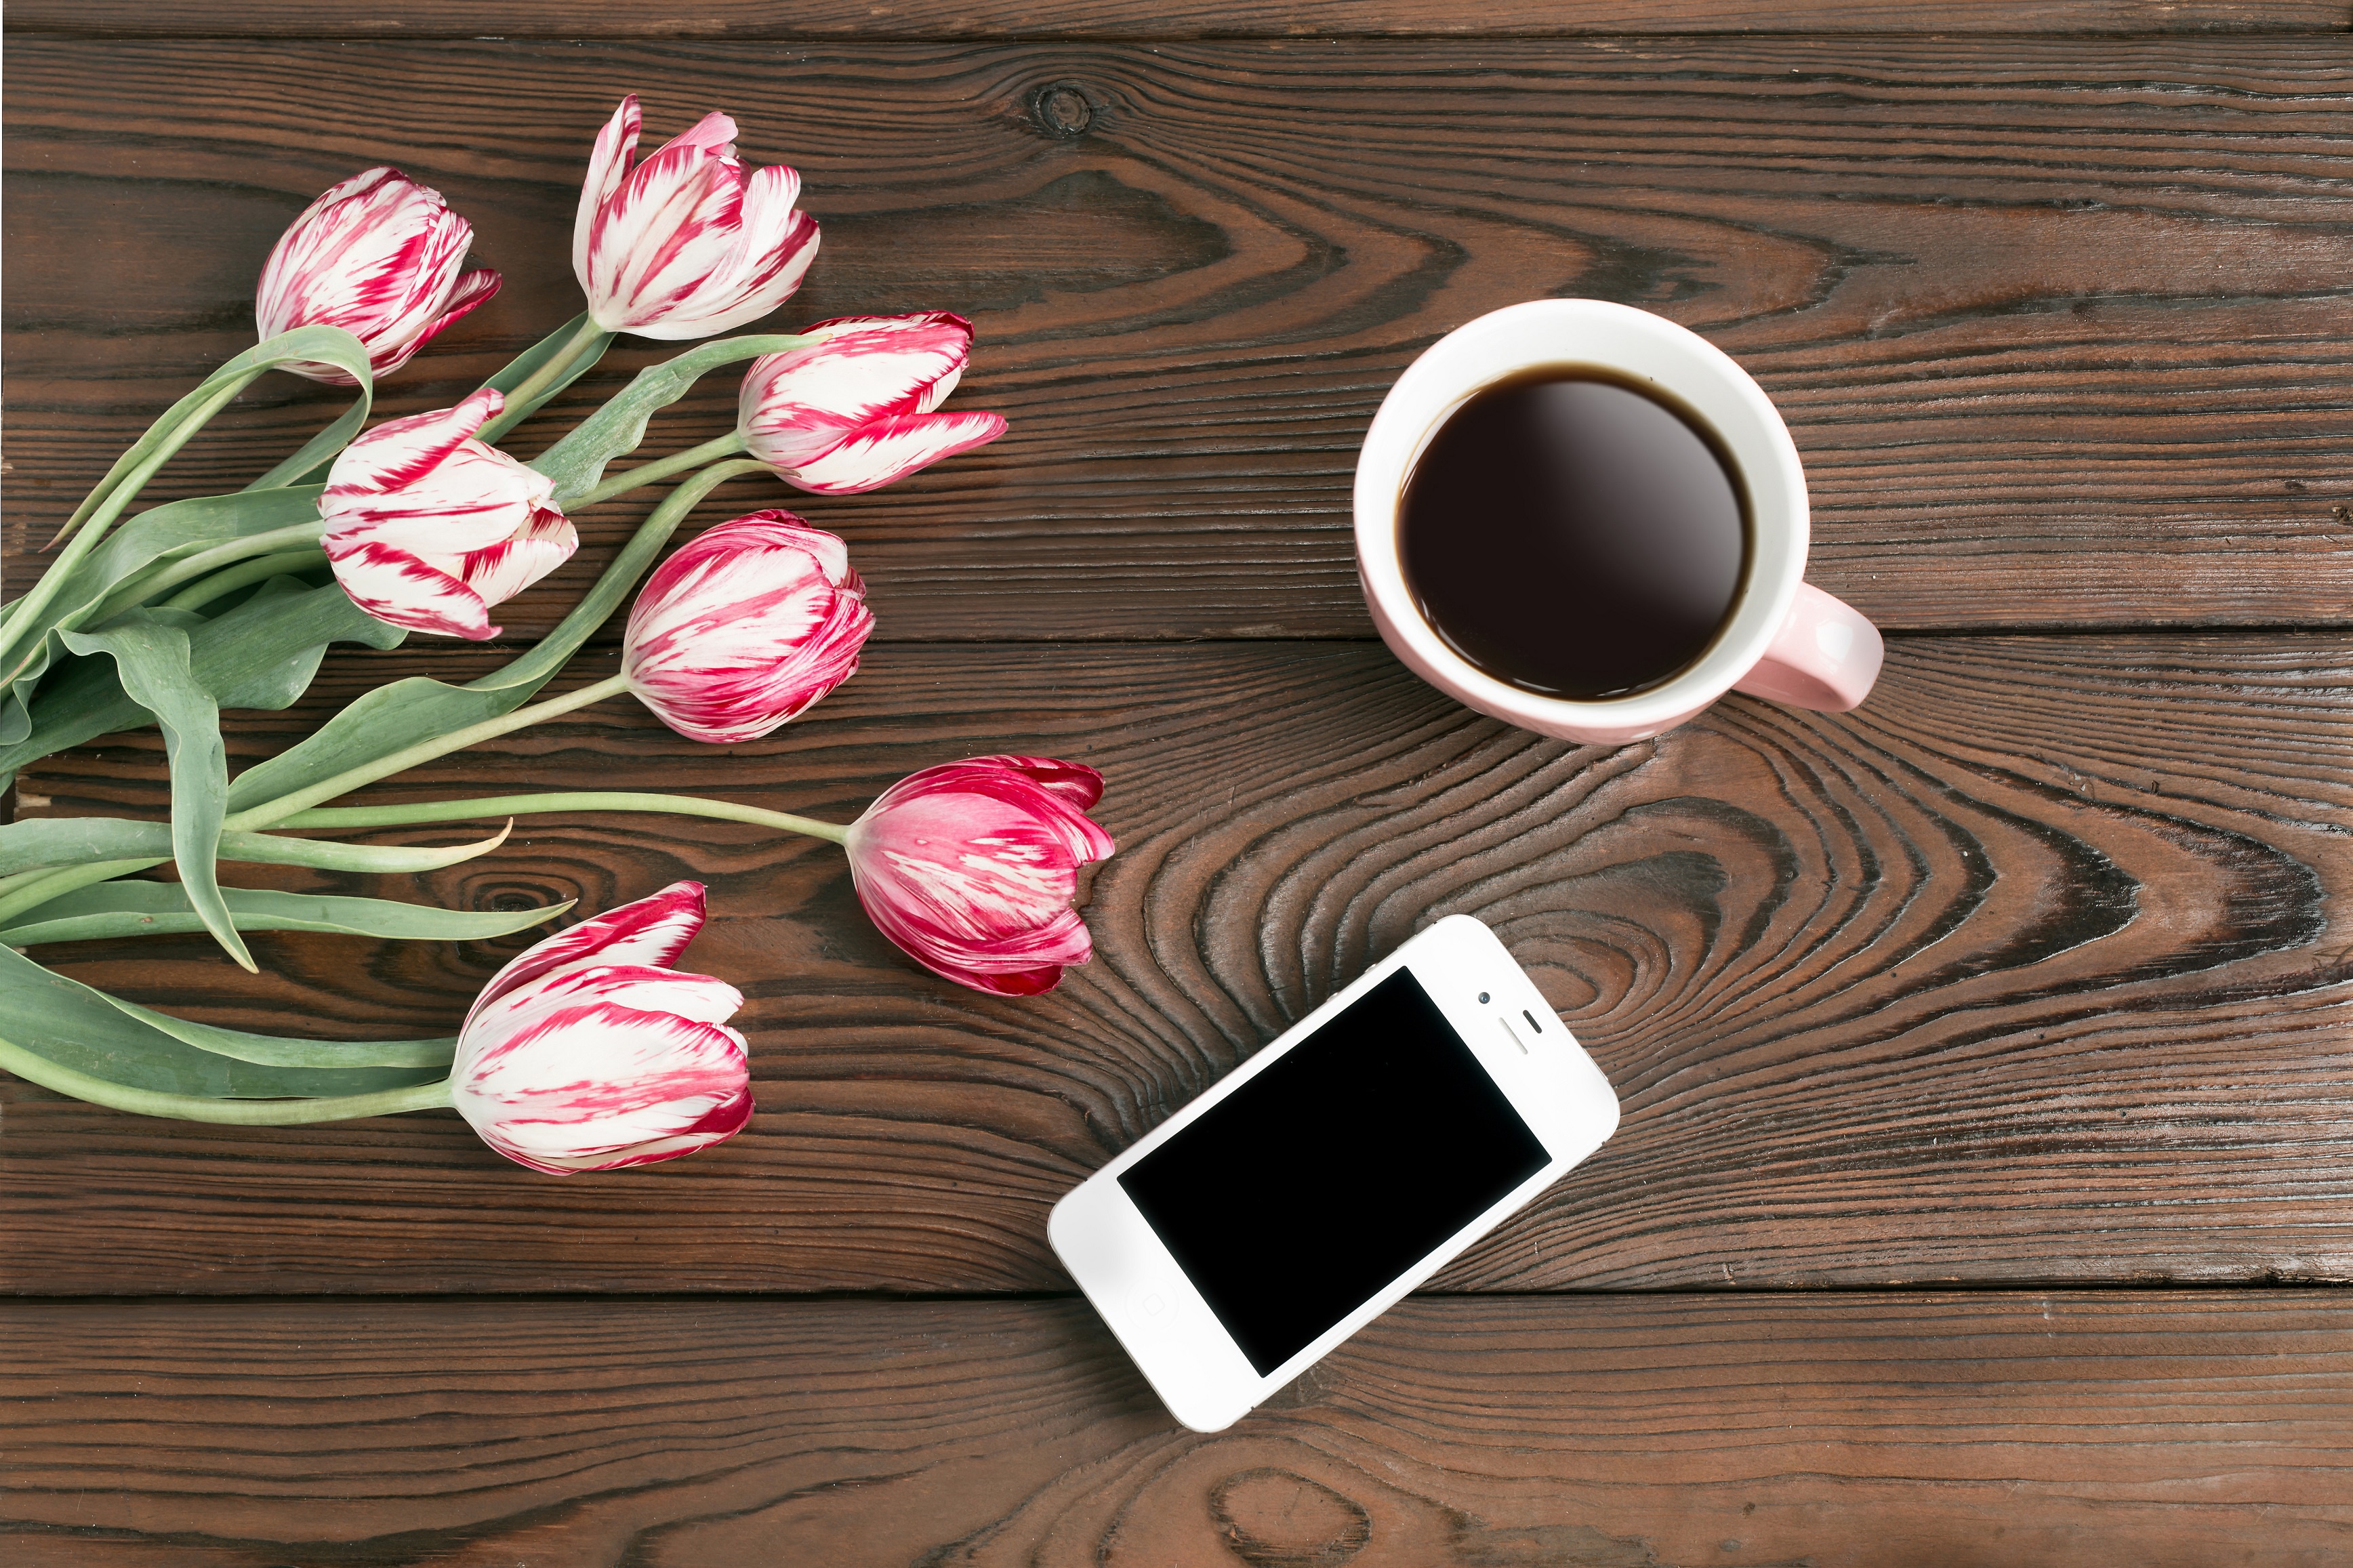 Рабочий стол на моем телефоне. Цветы на деревянном столе. Кофе и цветы. Цветы на столе вид сверху. Тюльпаны на деревянном столе.